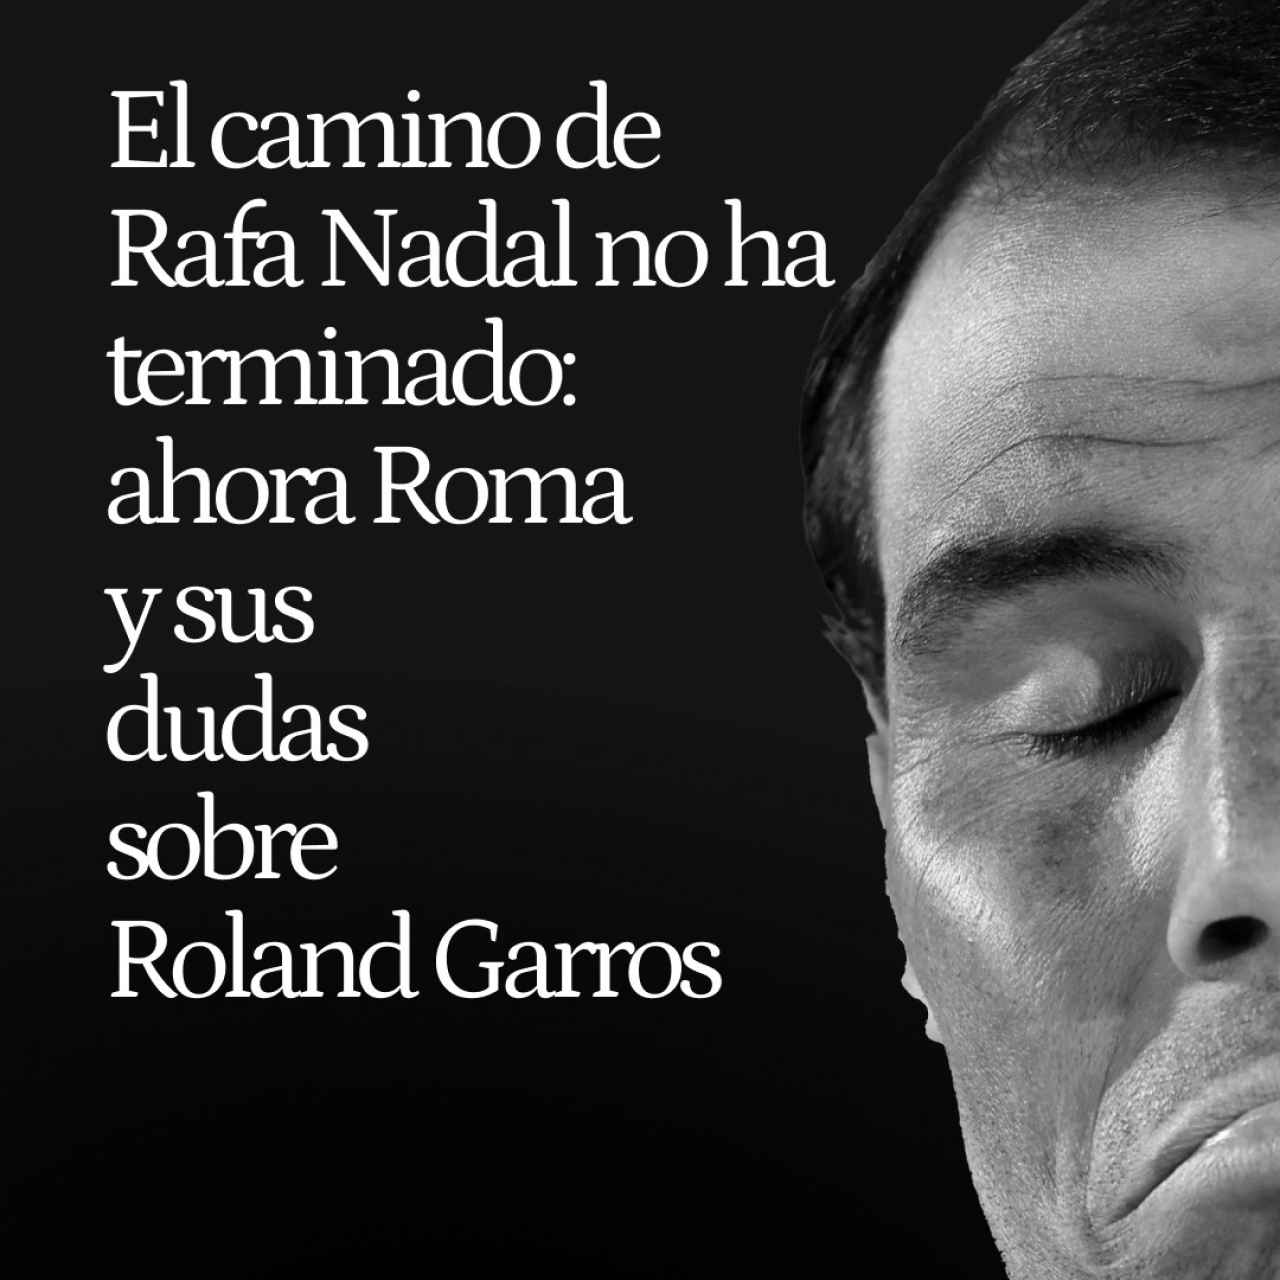 El camino de Rafa Nadal todavía no ha terminado: ahora Roma y sus dudas sobre Roland Garros